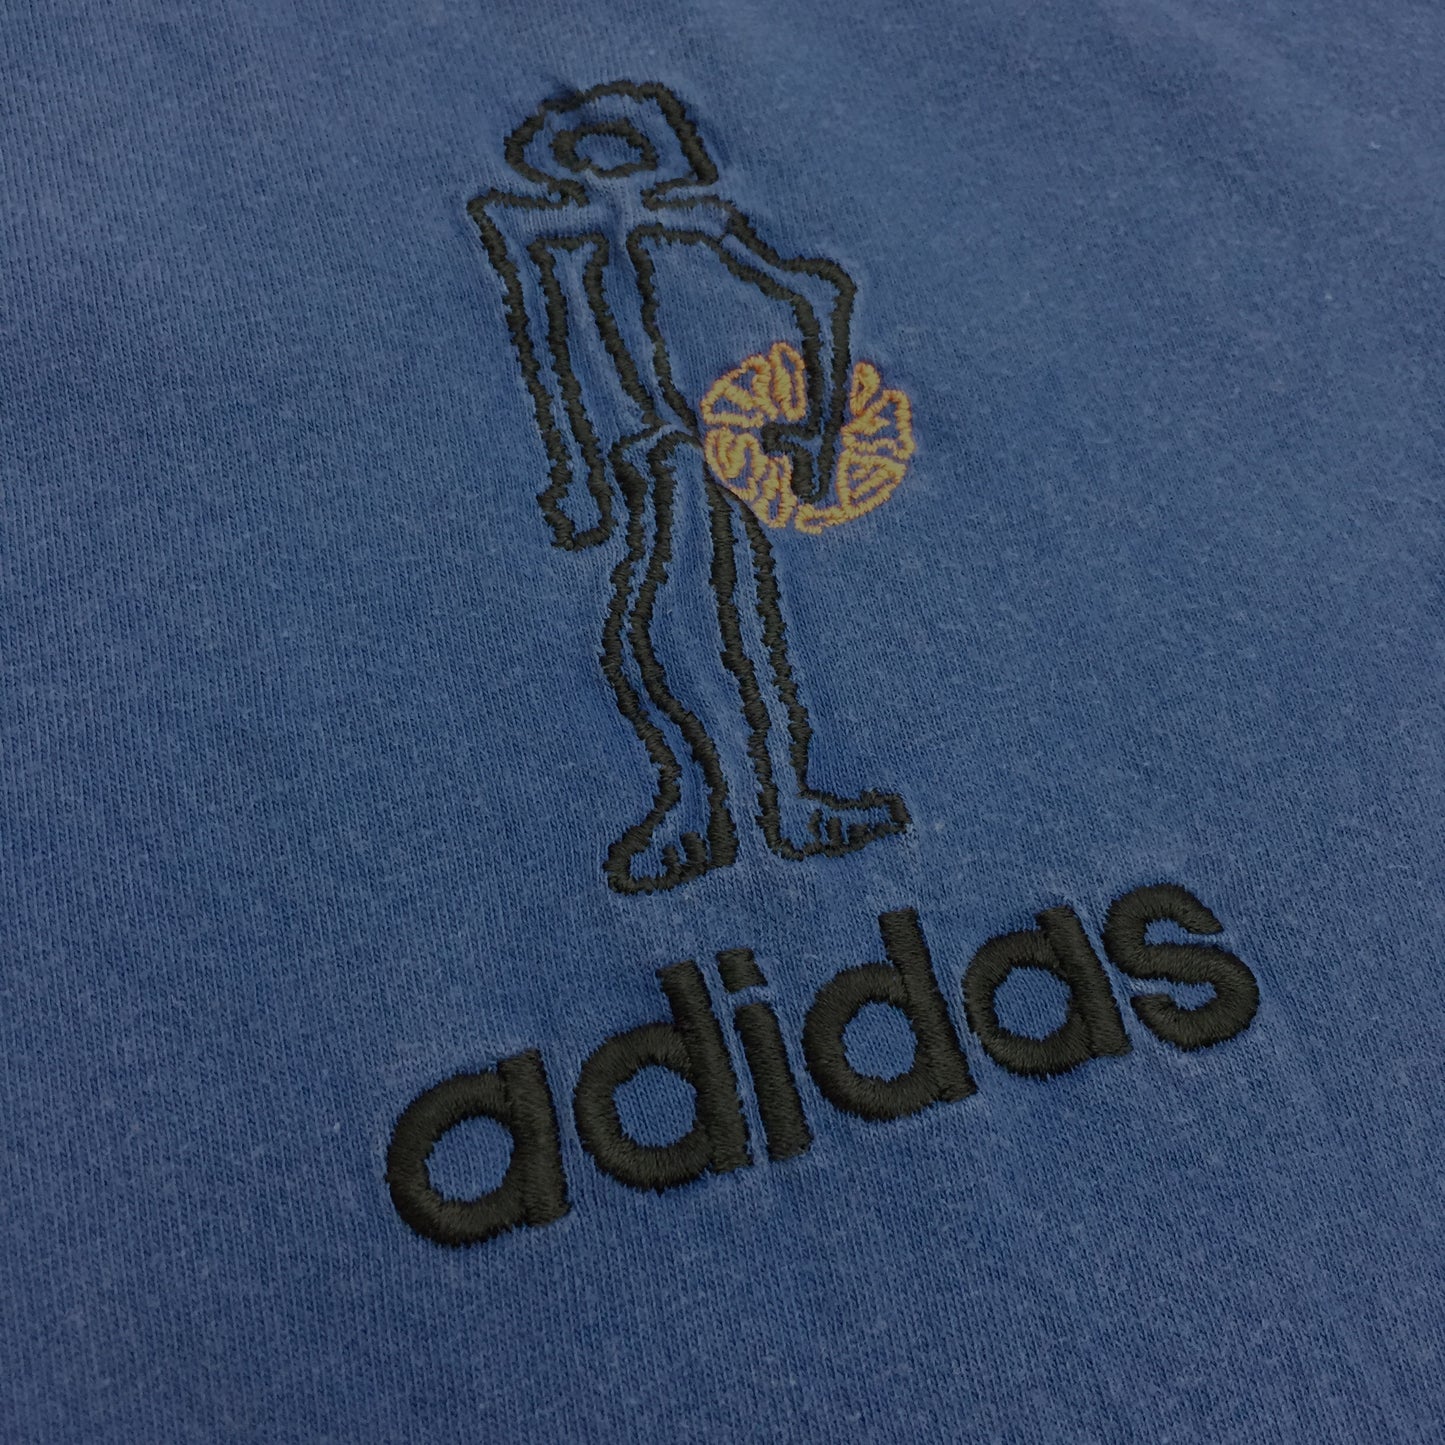 0037 Adidas Streetball Basketball Vintage T-Shirt